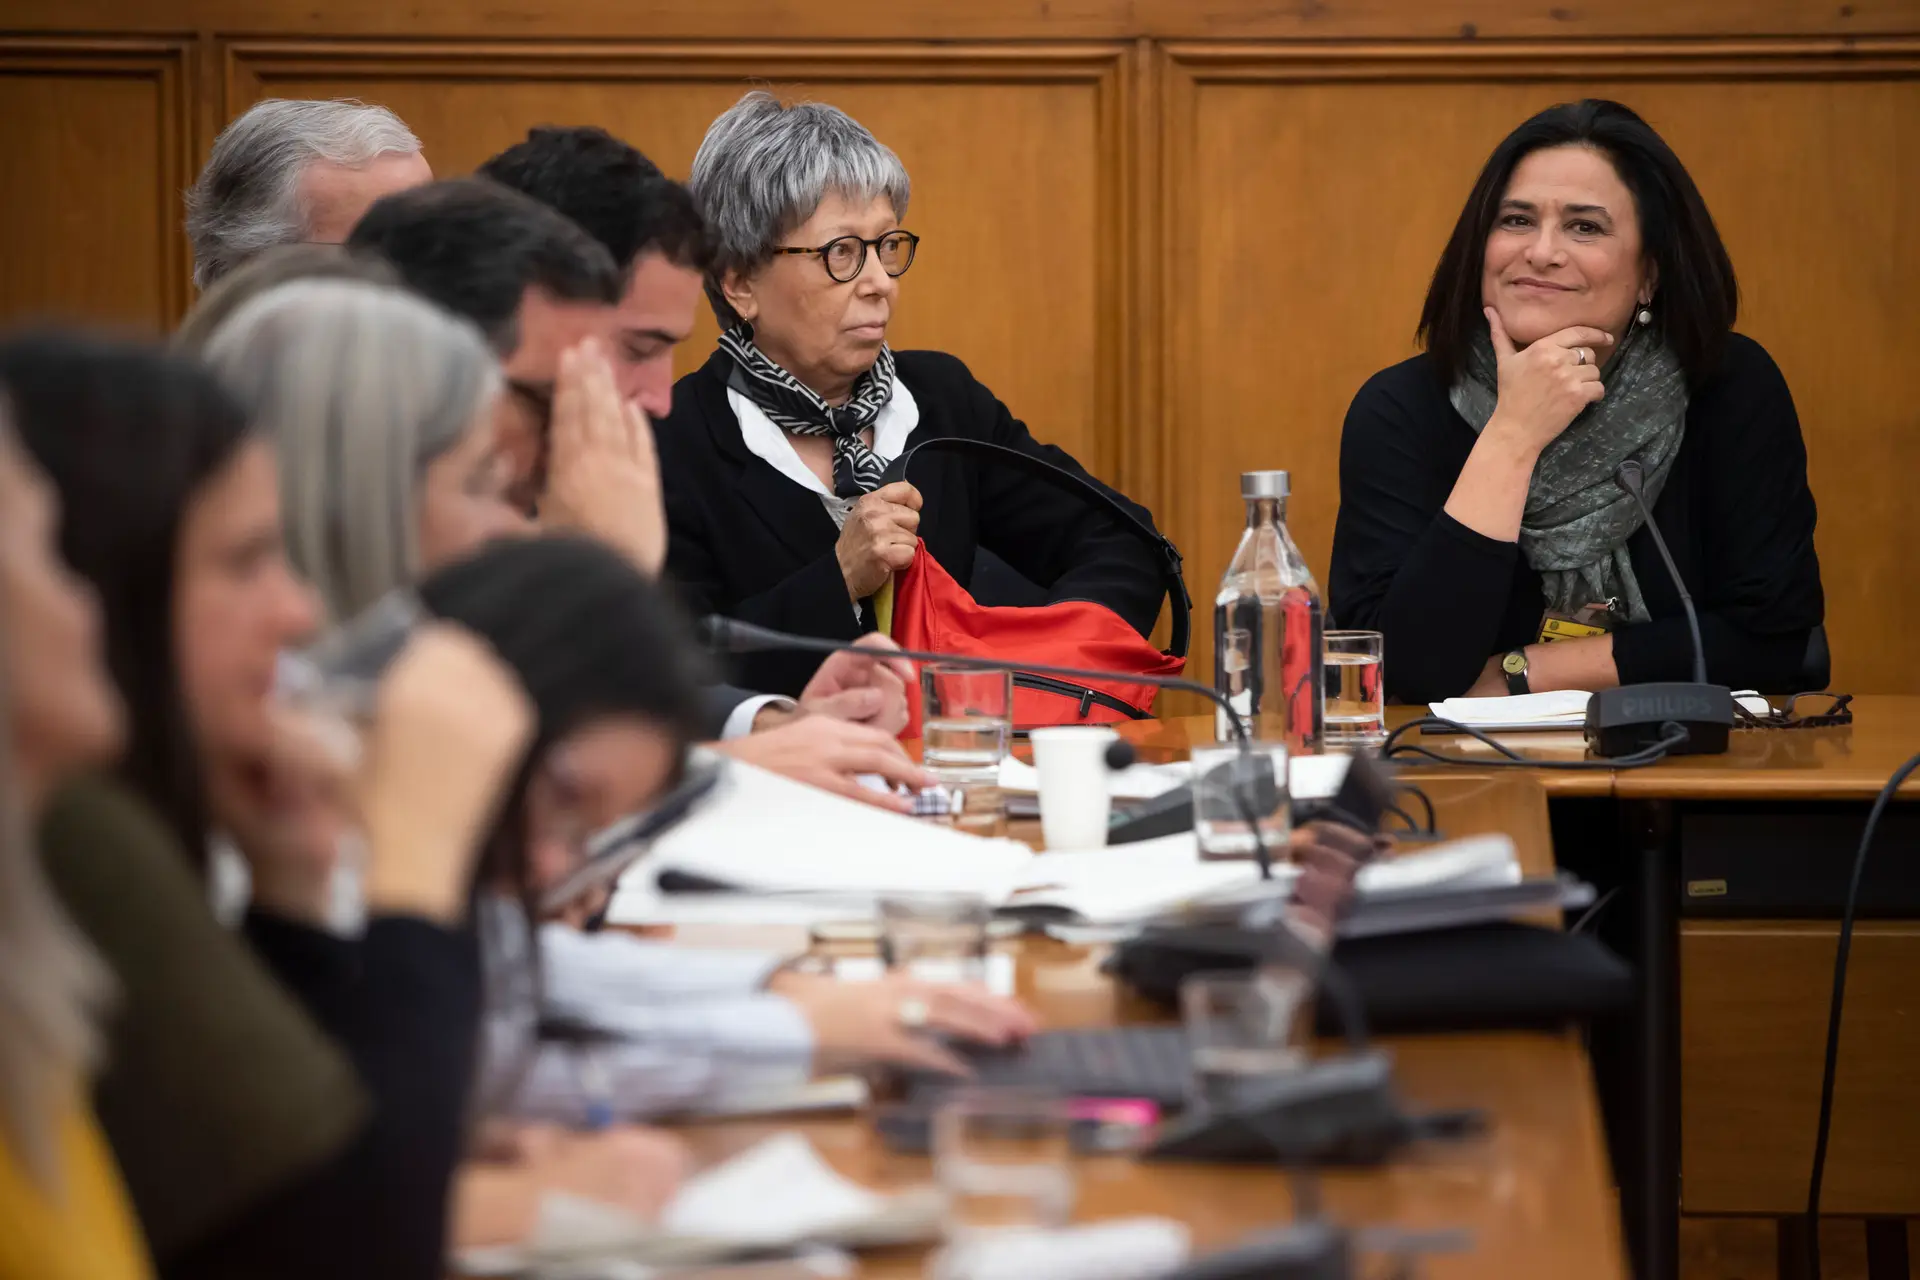 A diretora de informação da RTP, Maria Flor Pedroso, acompanhada pela diretora adjunta, Helena Garrido, durante a audição na Comissão de Cultura e Comunicação sobre a decisão de adiamento do programa Sexta às 9 por parte da RTP, na Assembleia da República, a 3 de dezembro de 2019.